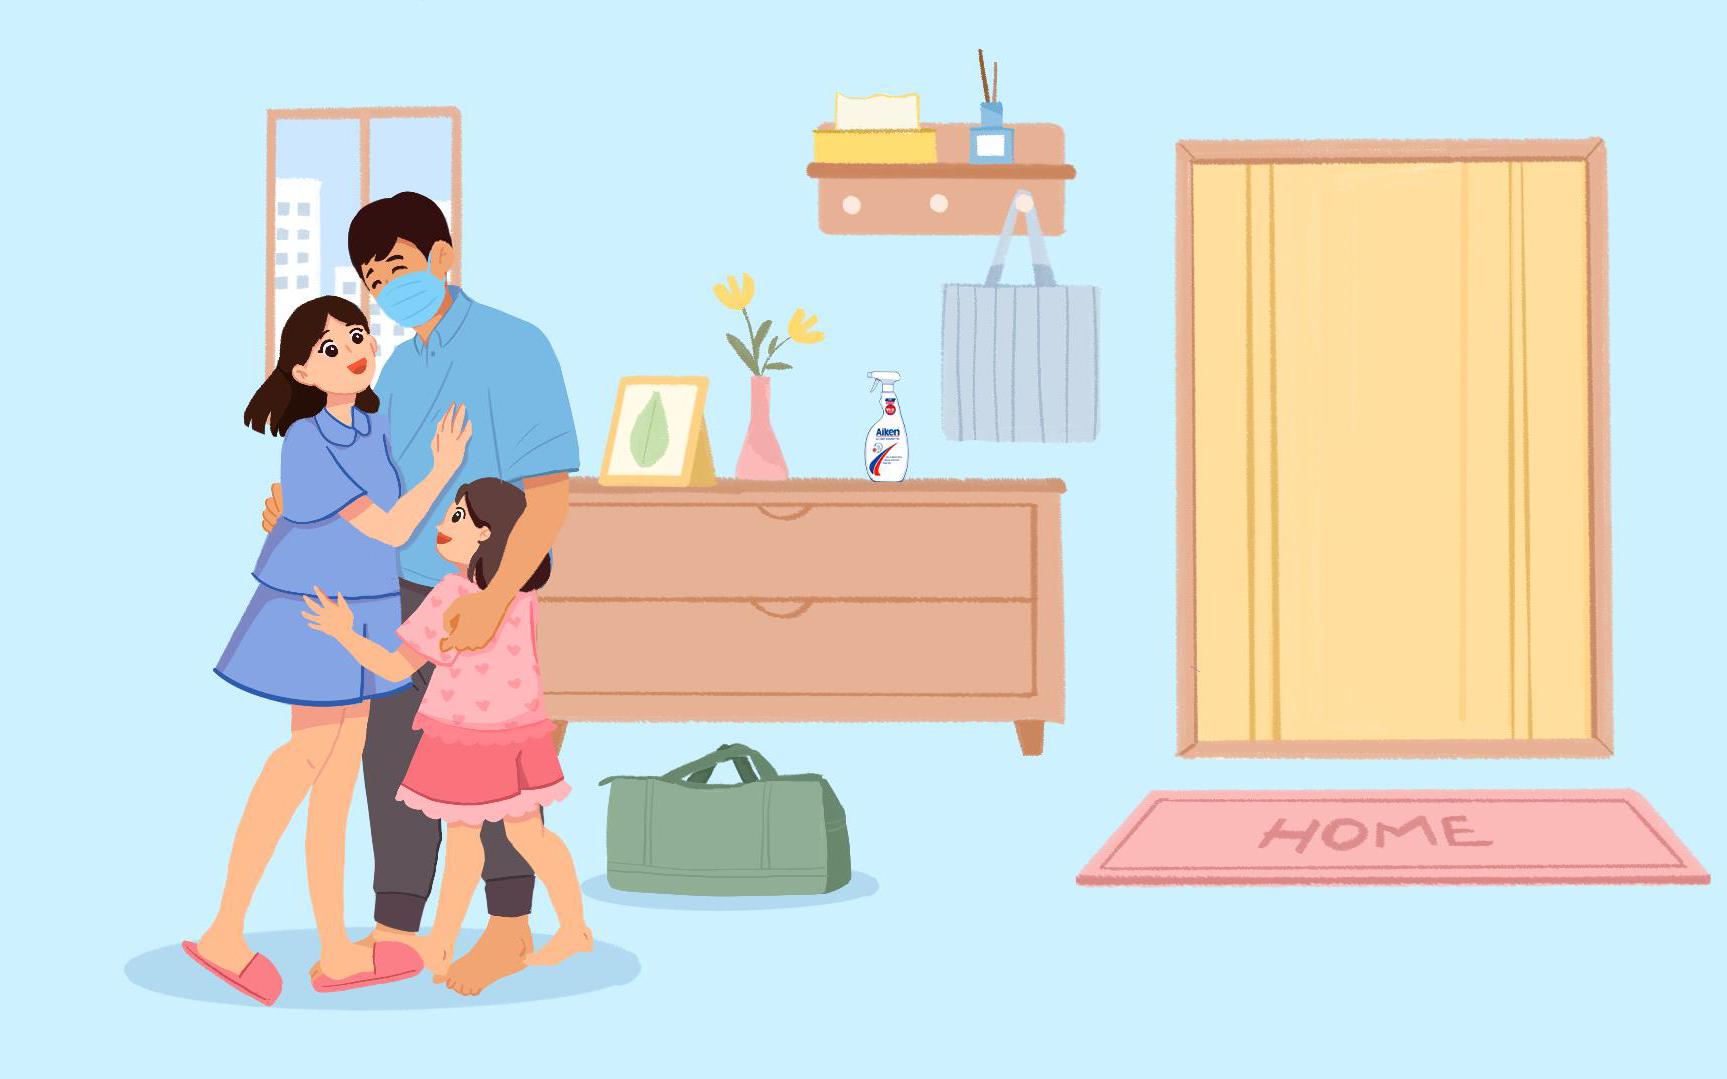 “Hạnh phúc gia đình đến từ những điều thật đơn giản” - Video sau sẽ giúp bạn cảm nhận rõ điều ấy